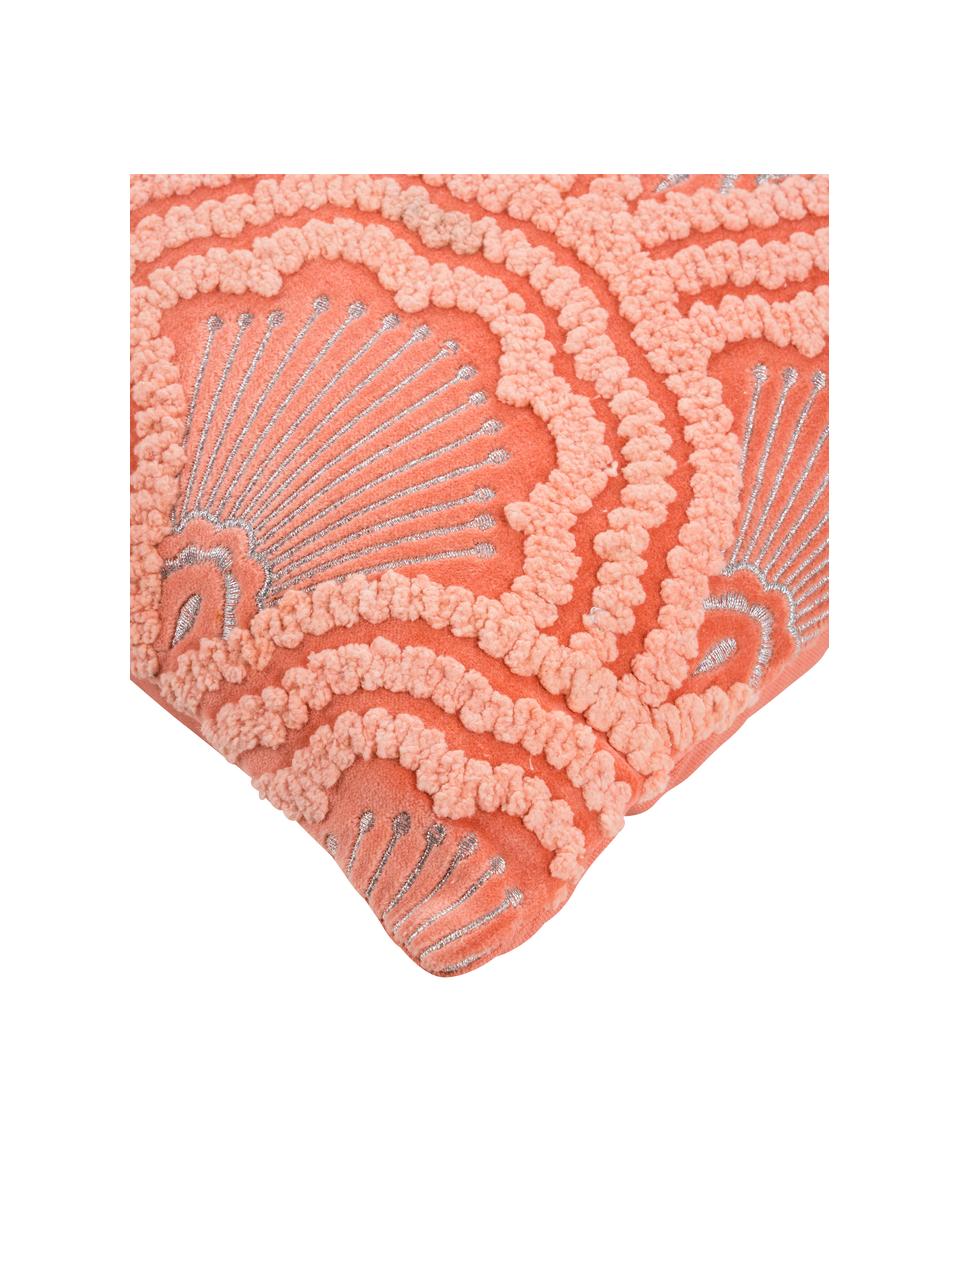 Bestickte Samt-Kissenhülle Chelsey mit Hoch-Tief-Muster, 100% Baumwollsamt, Koralle, 45 x 45 cm